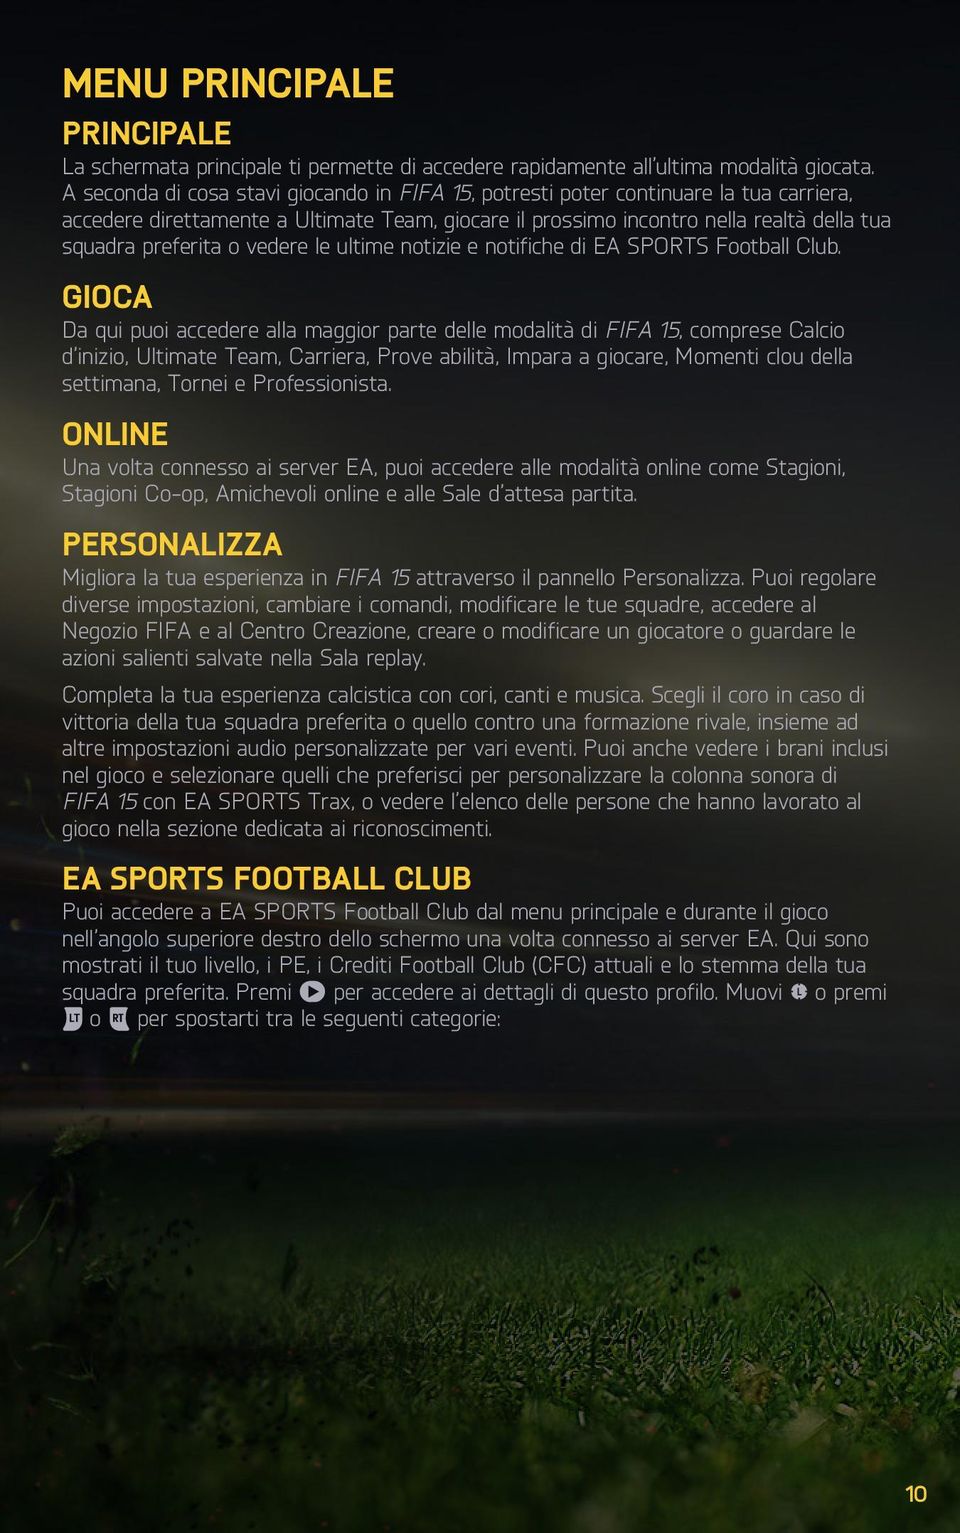 vedere le ultime notizie e notifiche di EA SPORTS Football Club.